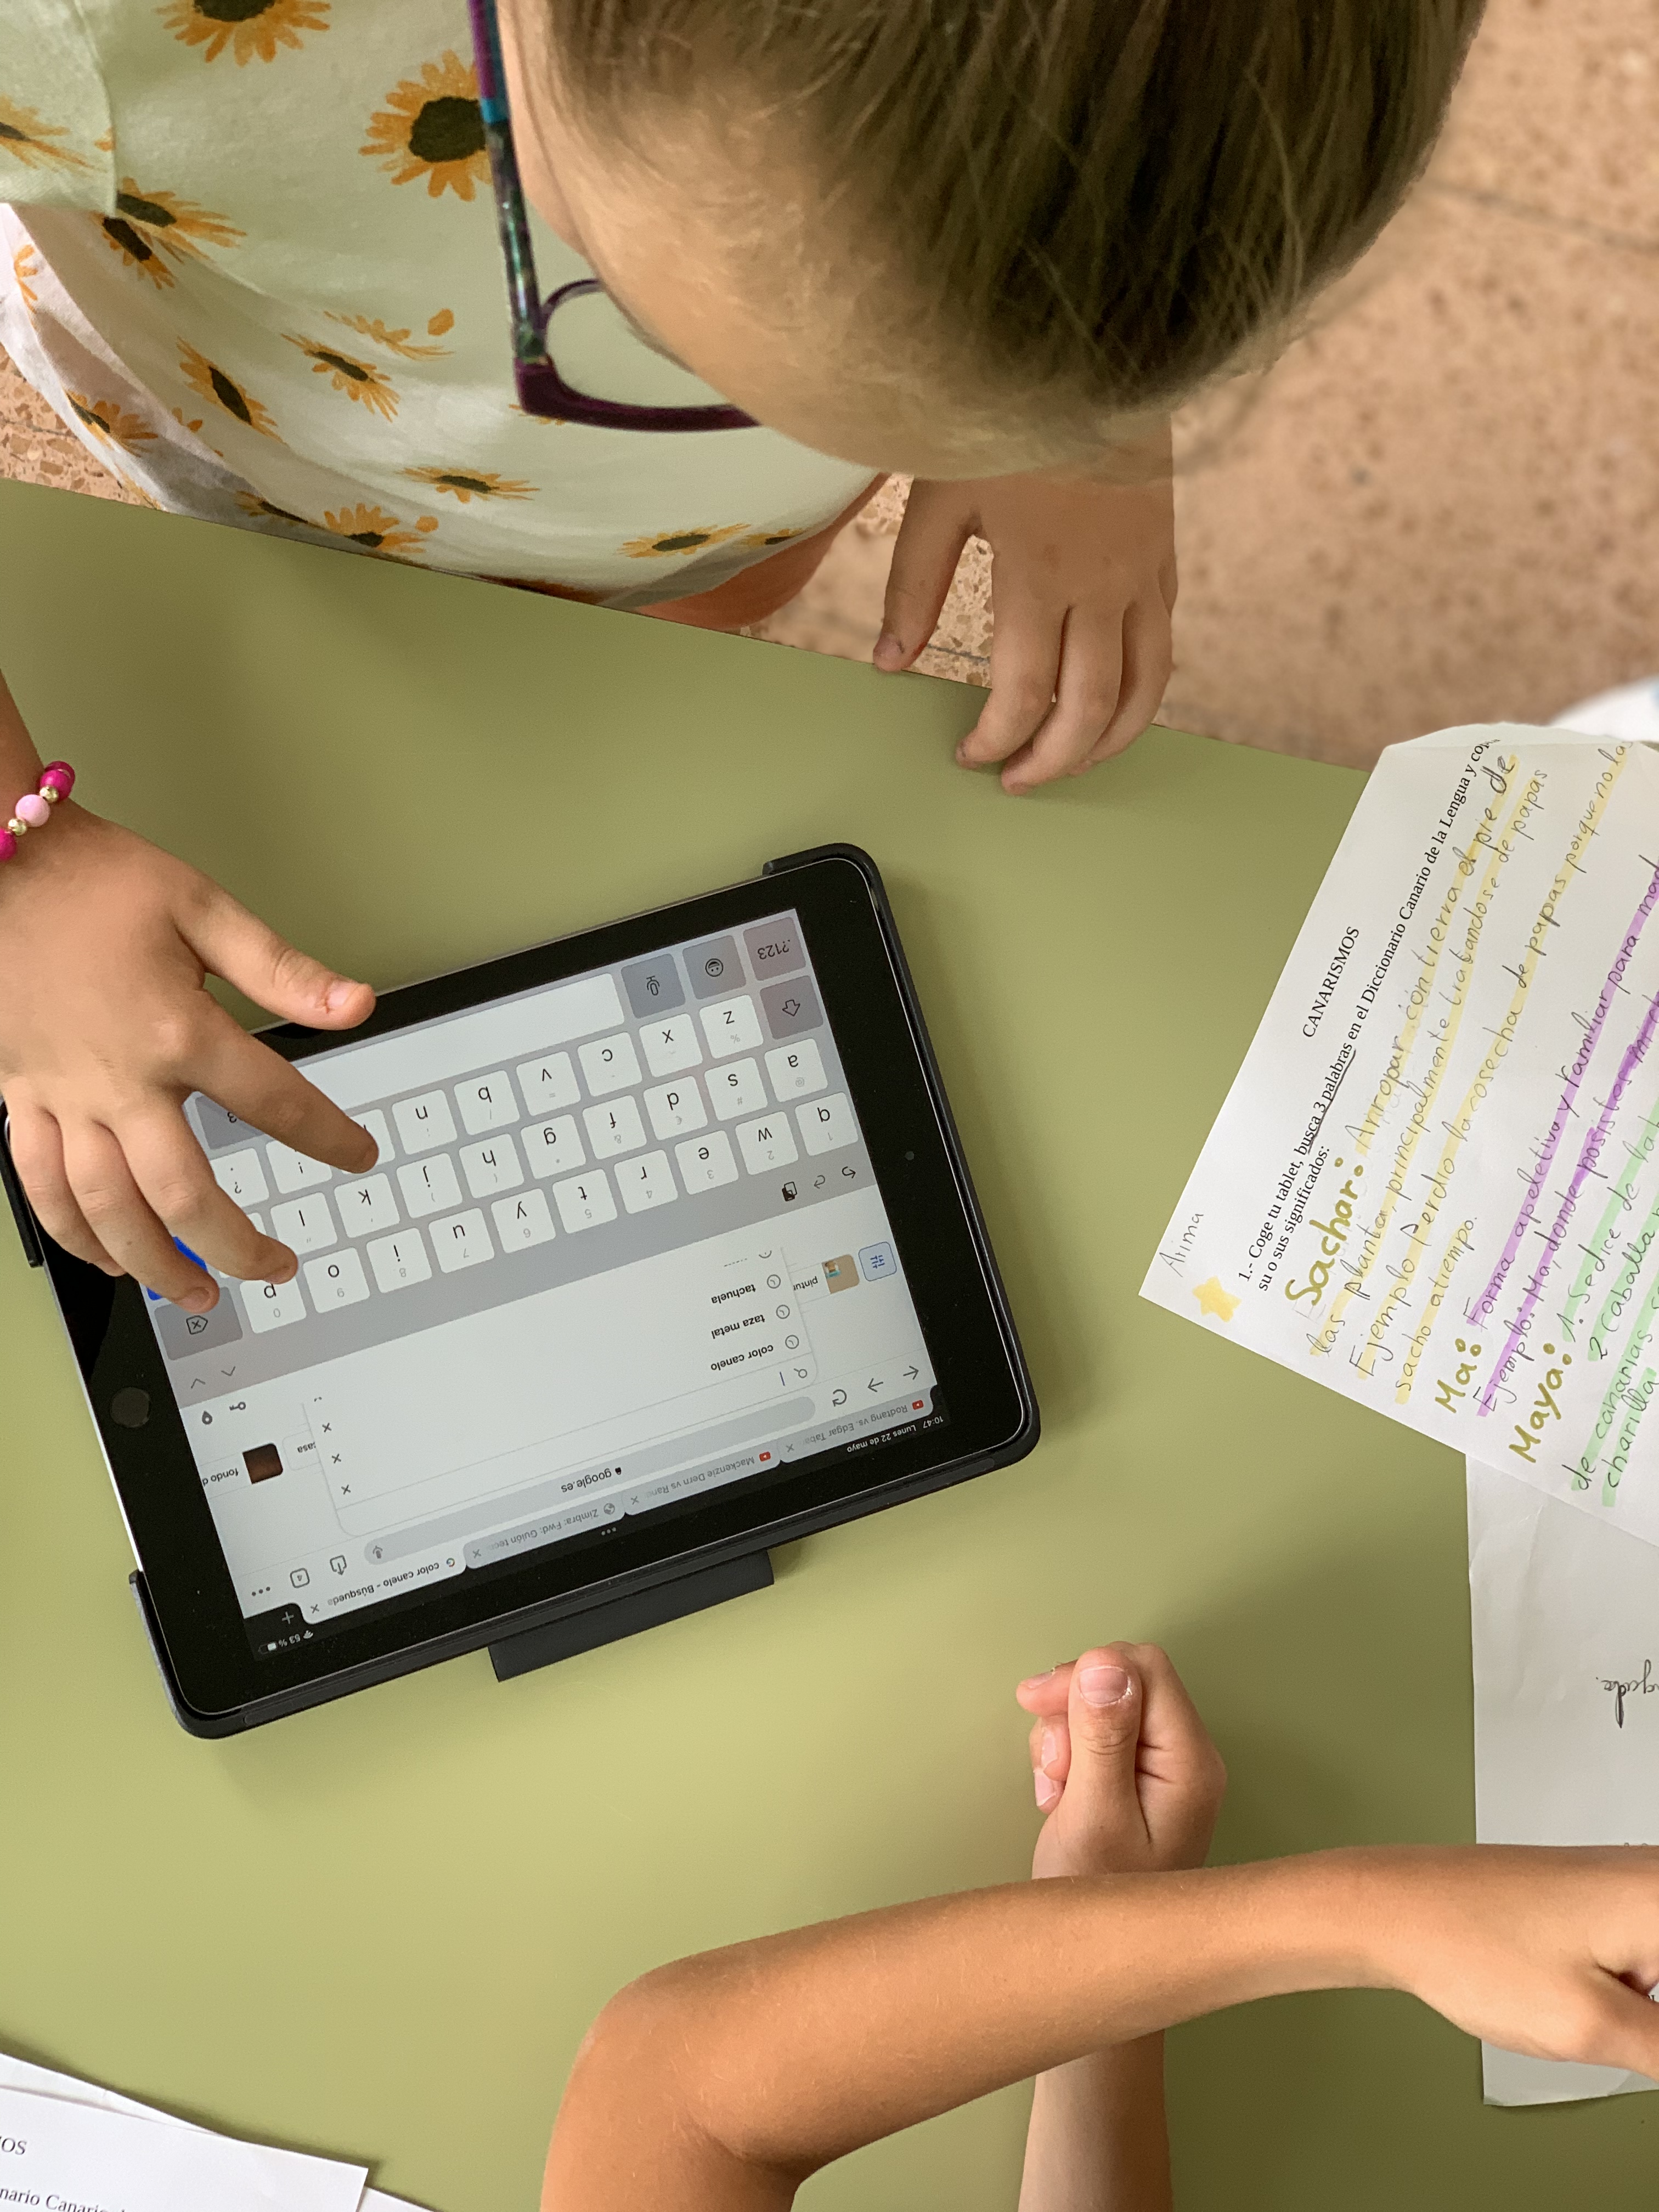 CEIP La Goleta - Alumnas investigando en un buscador de Internet en la tablet